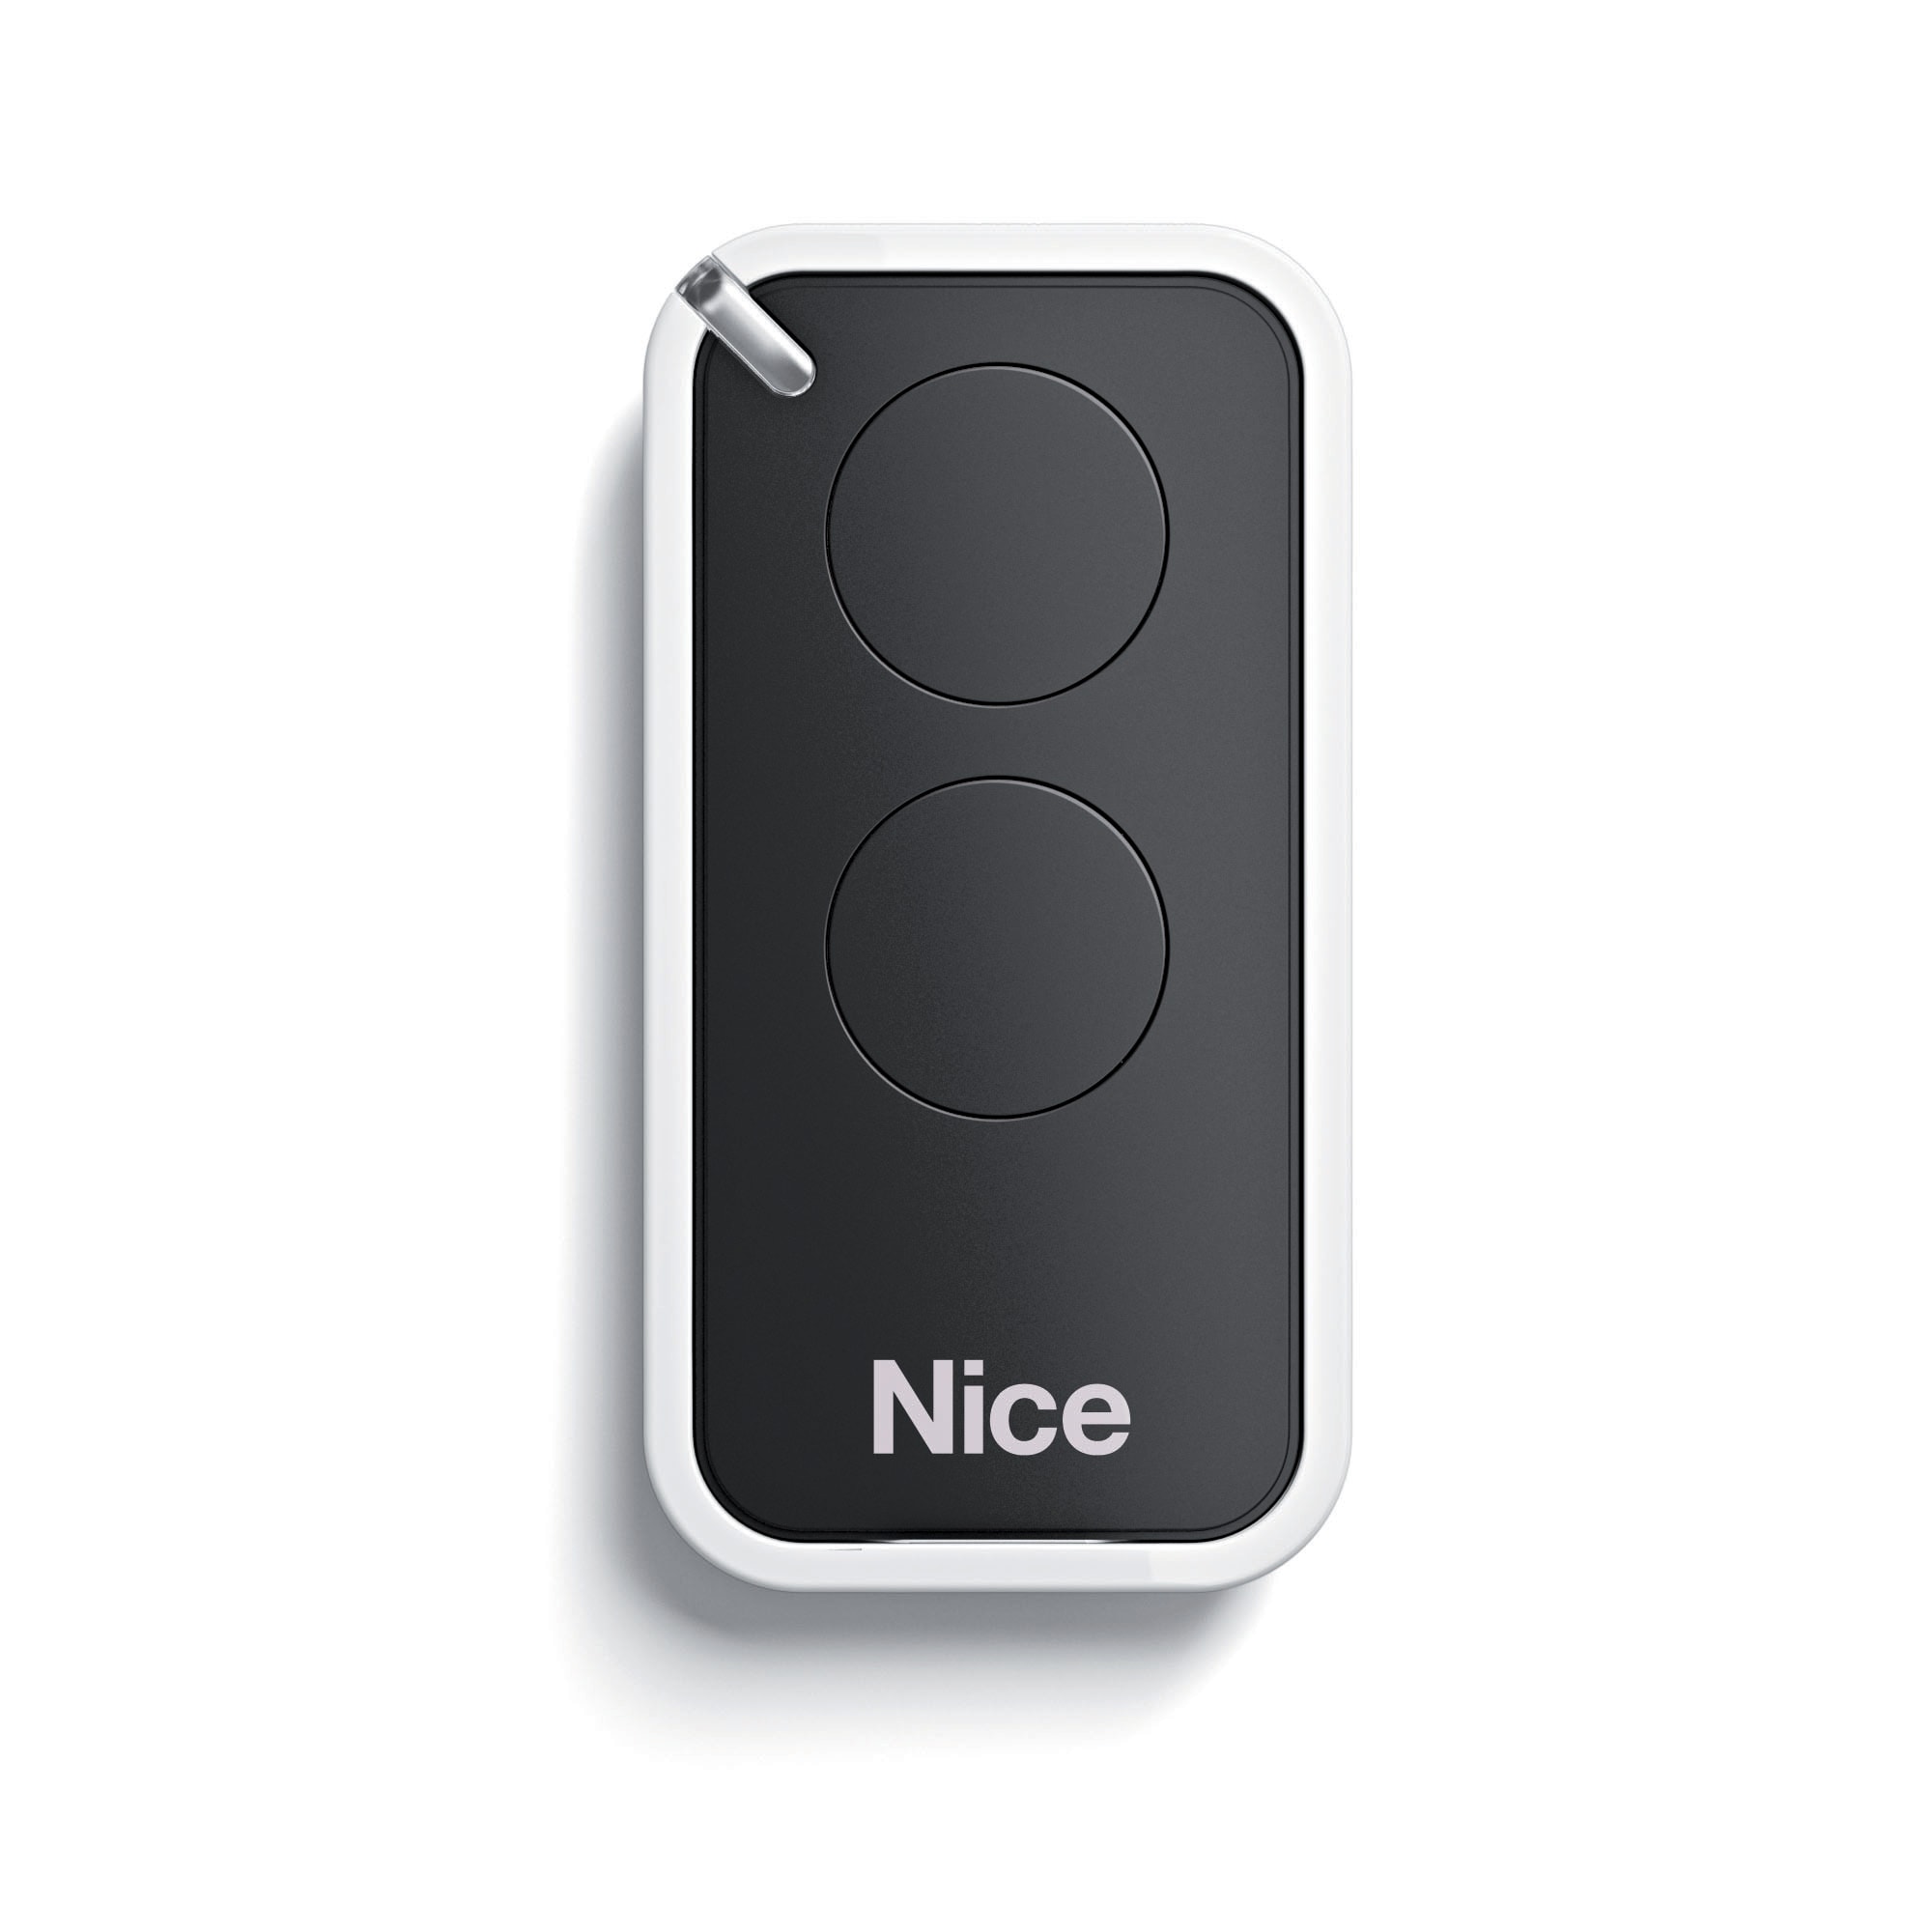 Nice - Emetteur 2 canaux, 433,92 MHz, couleur noir